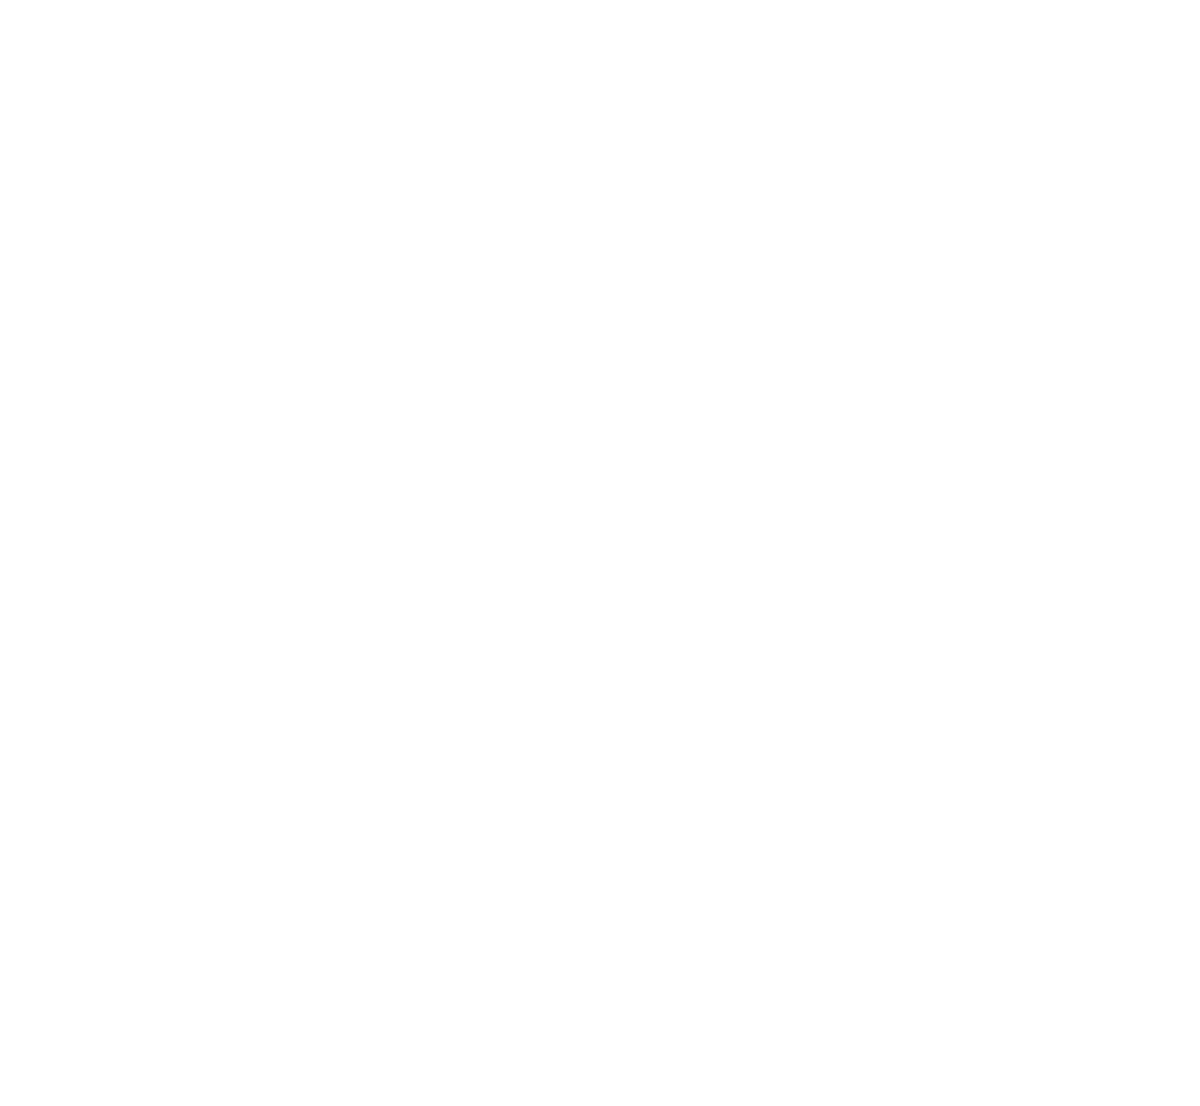 BEENOS 20周年記念ロゴ